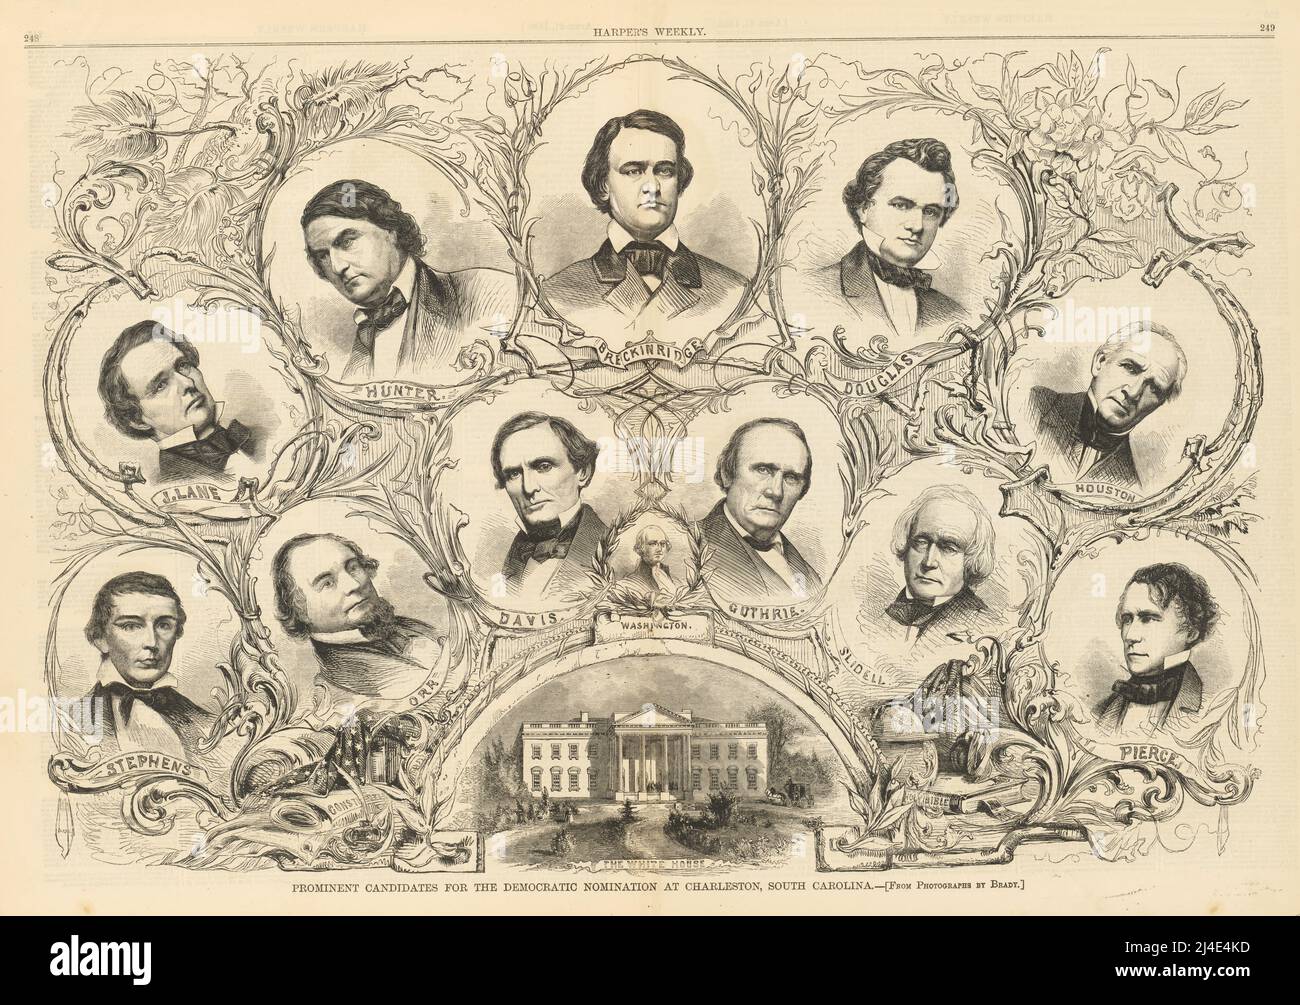 Candidats éminents pour la nomination démocratique 1860 à Charleston, Caroline du Sud Banque D'Images